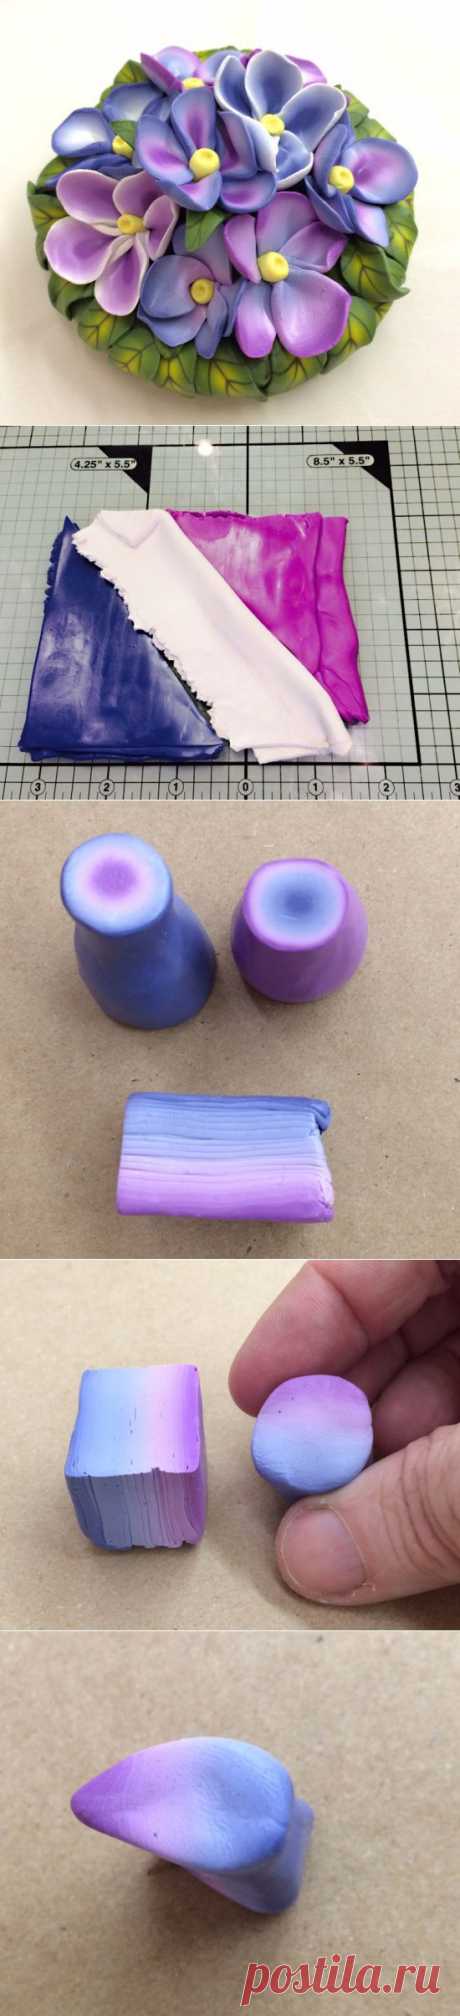 Букетик цветов из полимерной глины | Уроки лепки